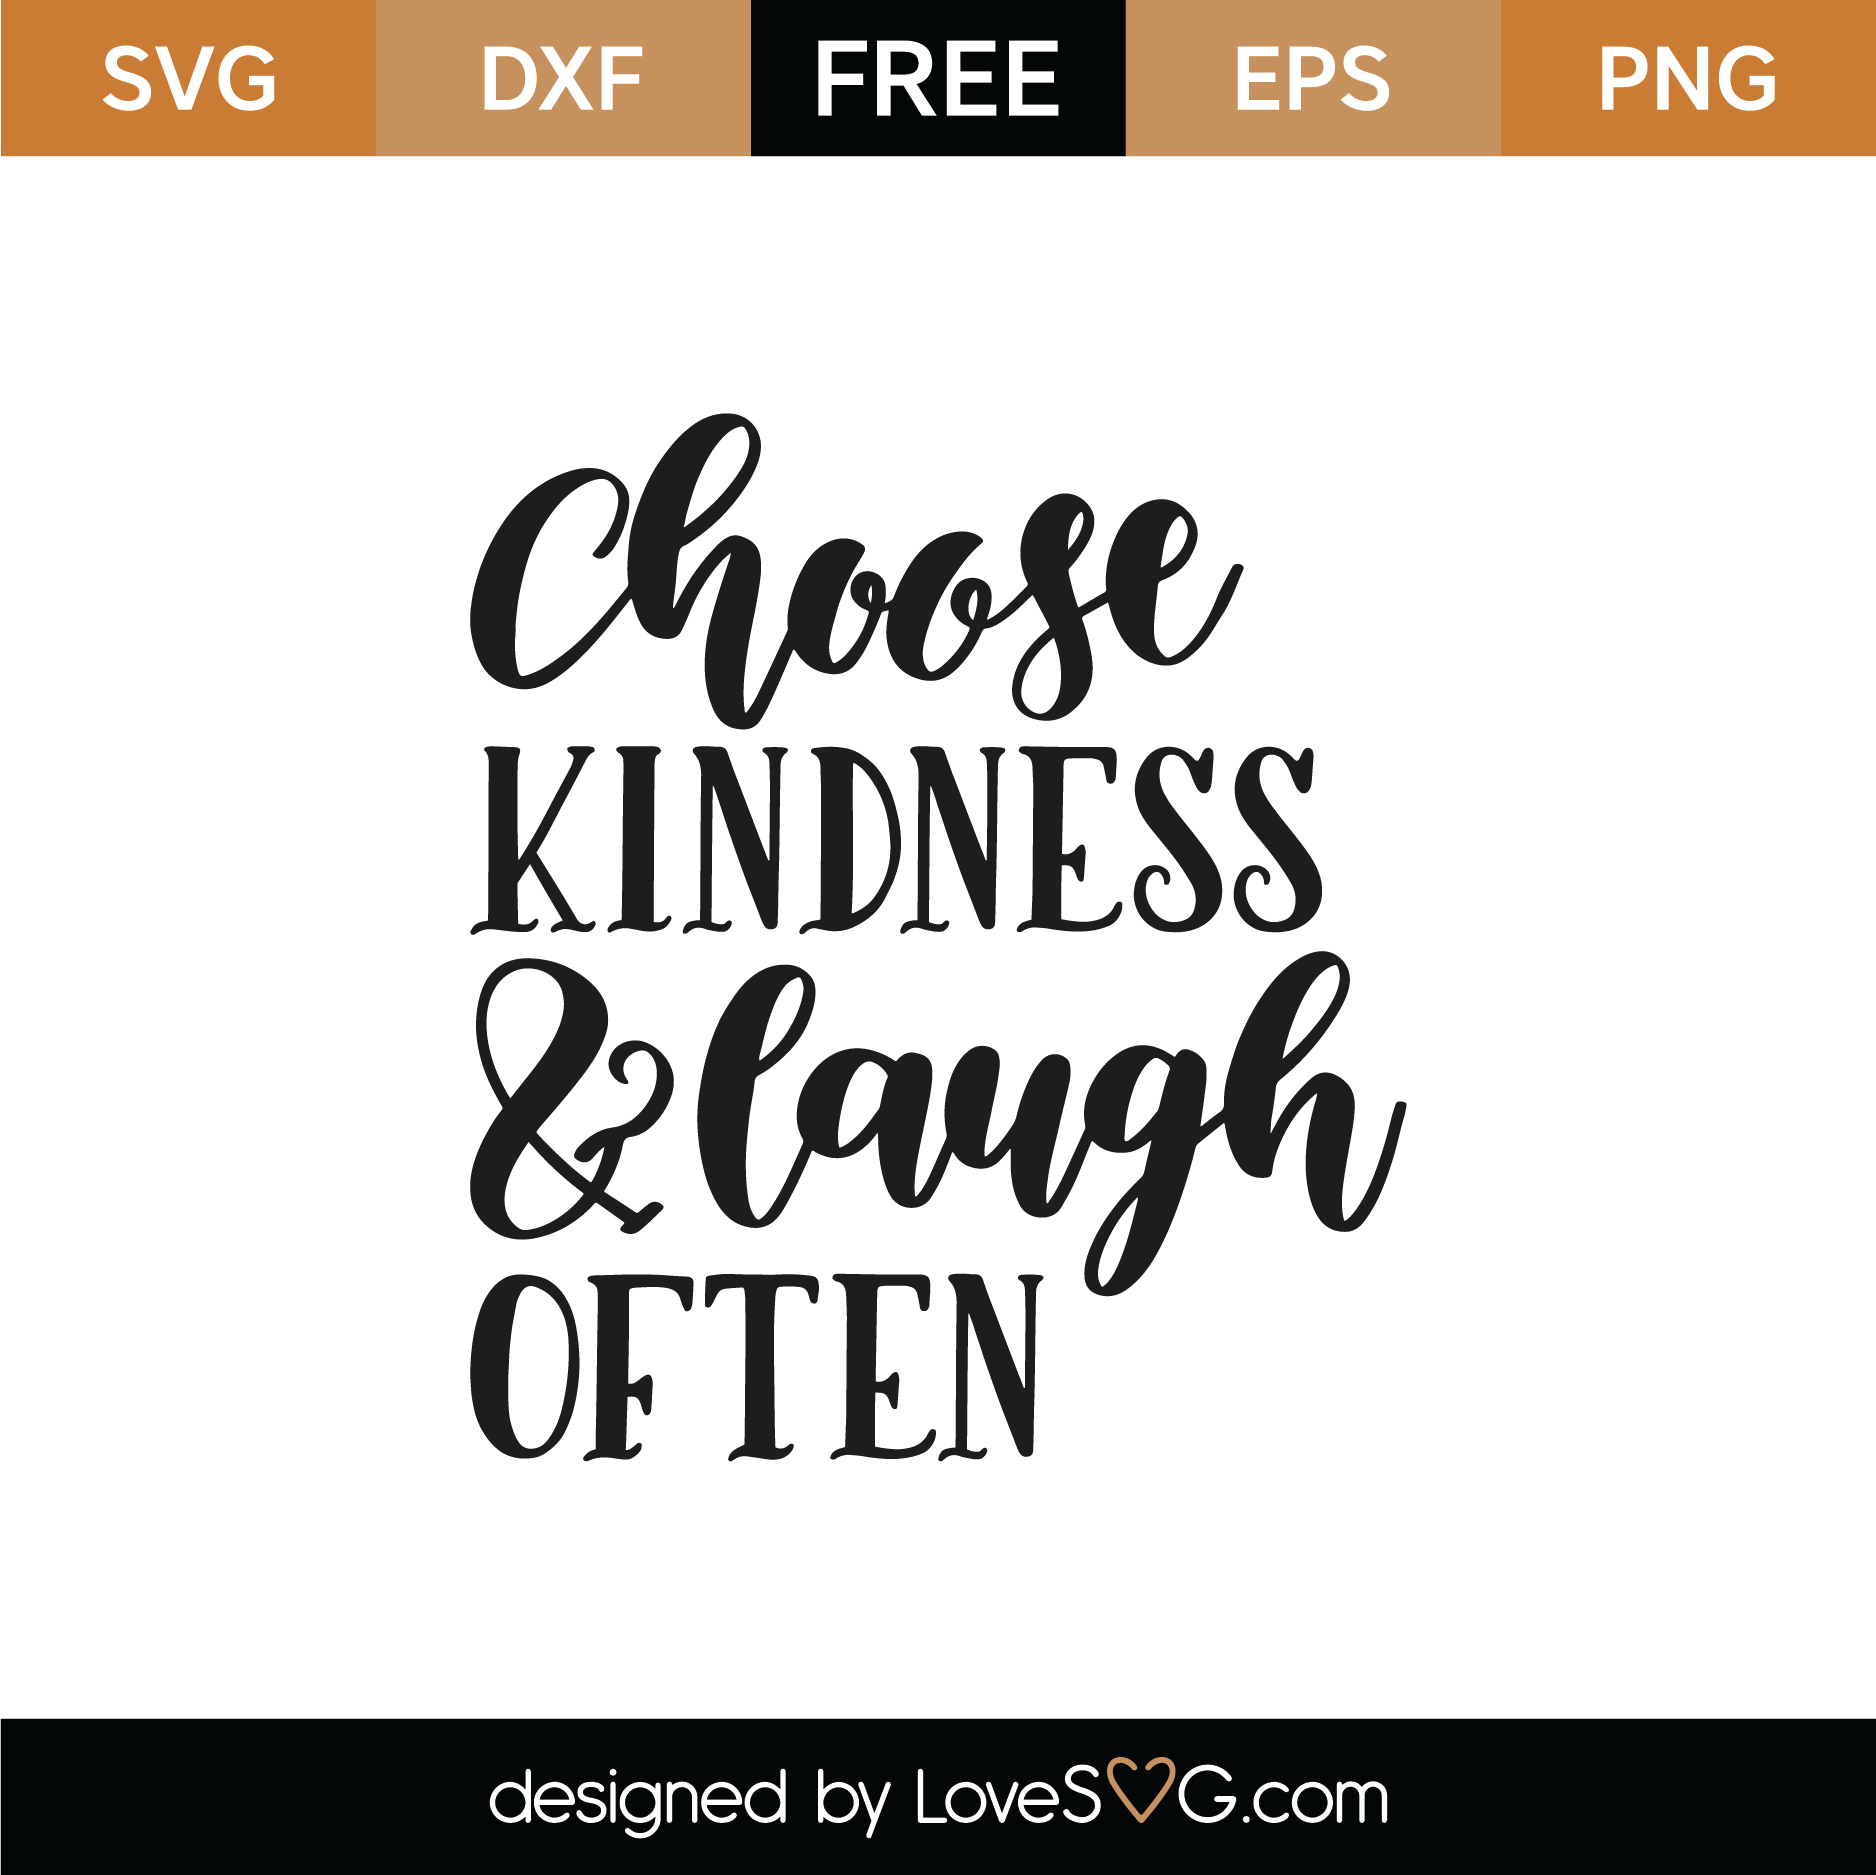 Download Free Choose Kindness SVG Cut File | Lovesvg.com